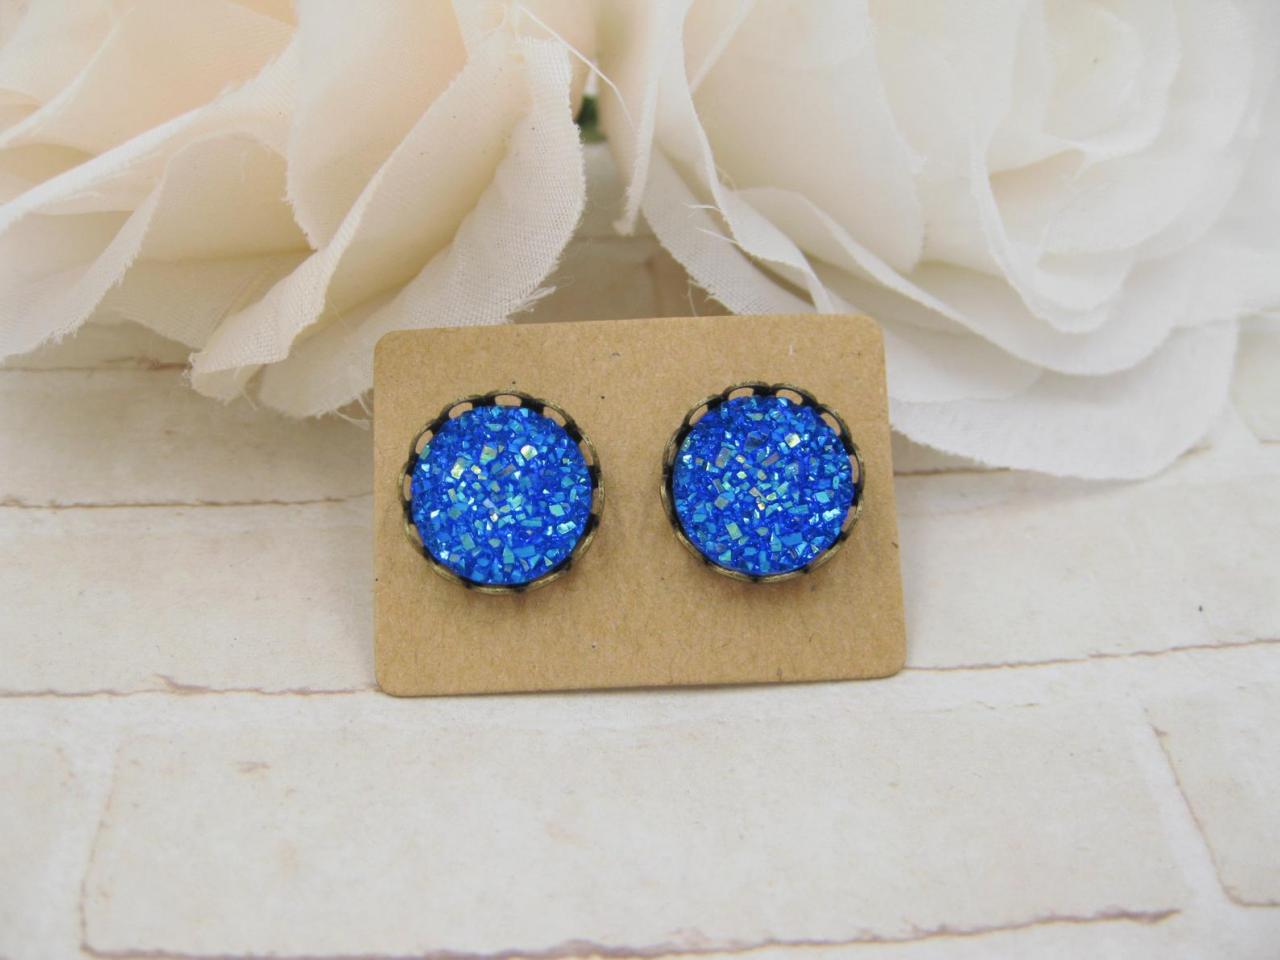 Royal Blue Druzy Earrings - Iris Druzy Stud Earrings - Faux Druzy Post Earrings